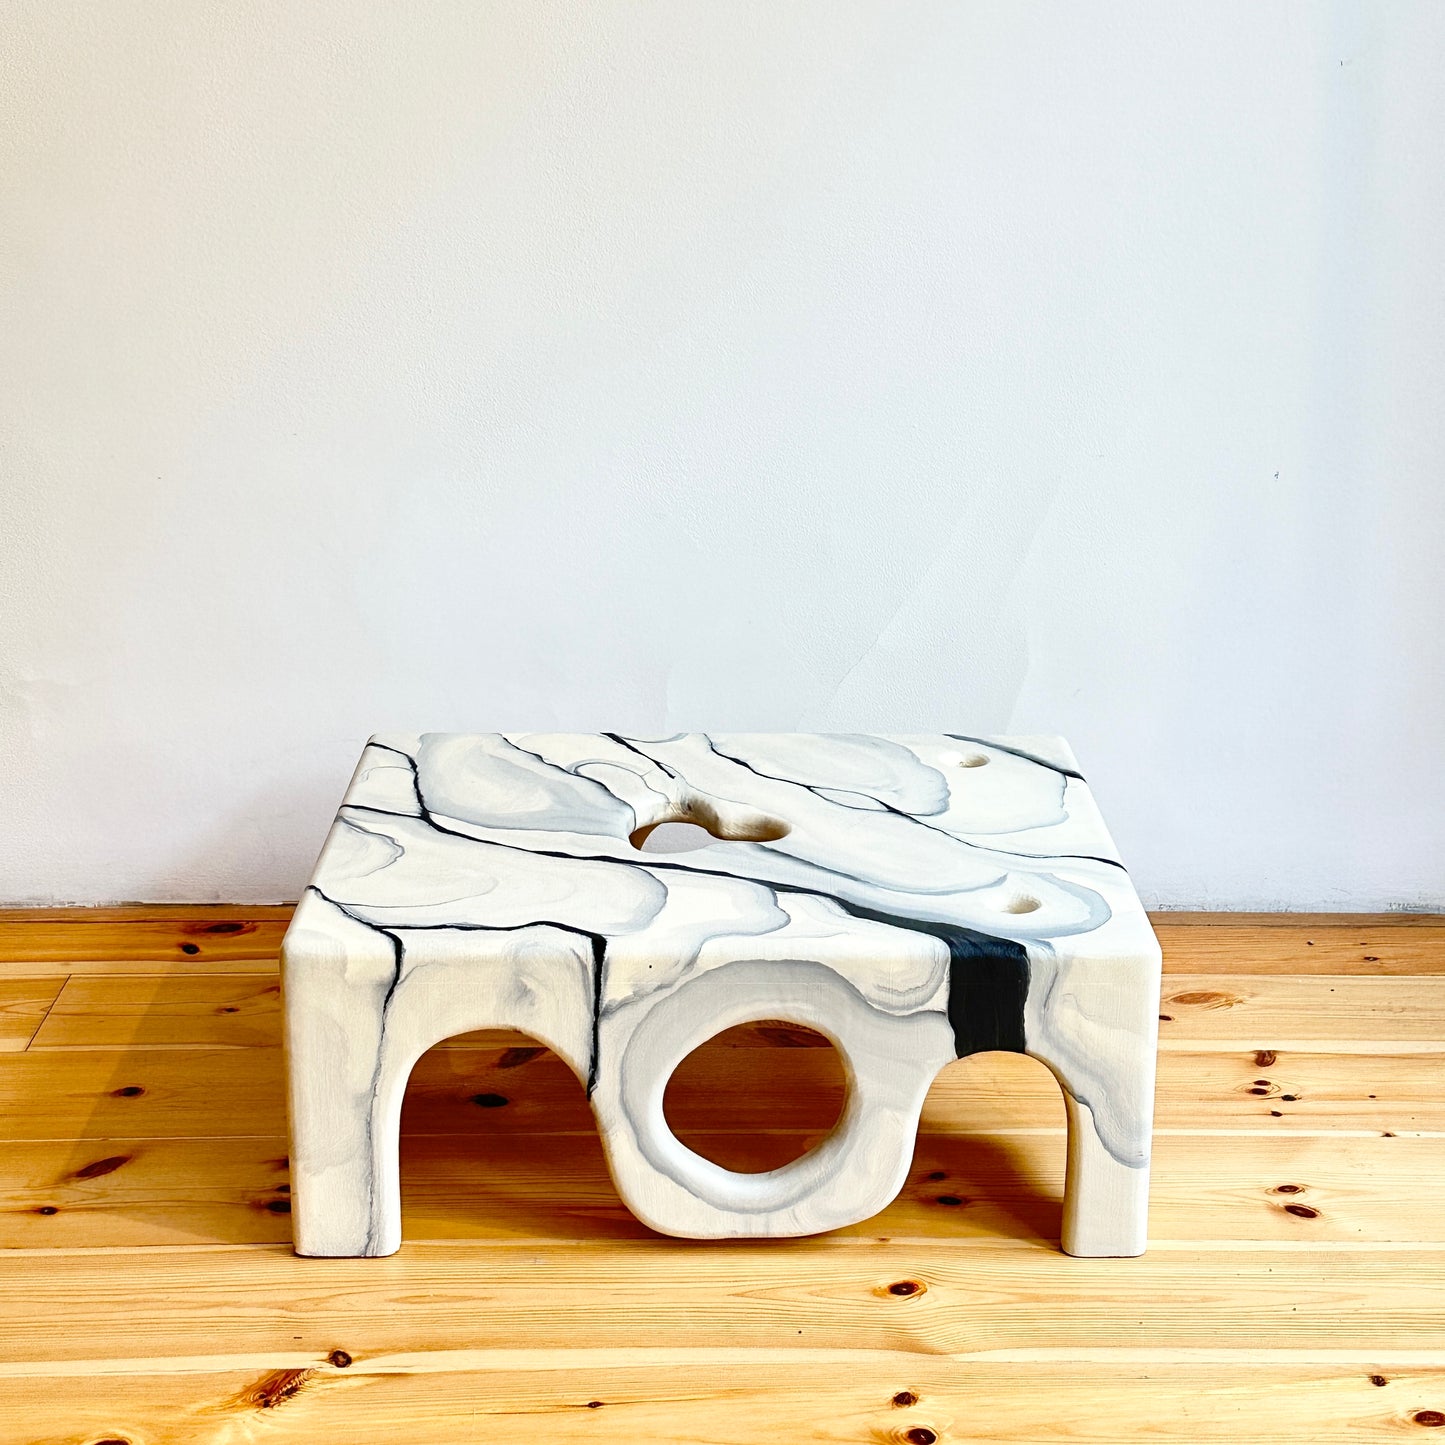 Coffee table by Henrik Ødegaard